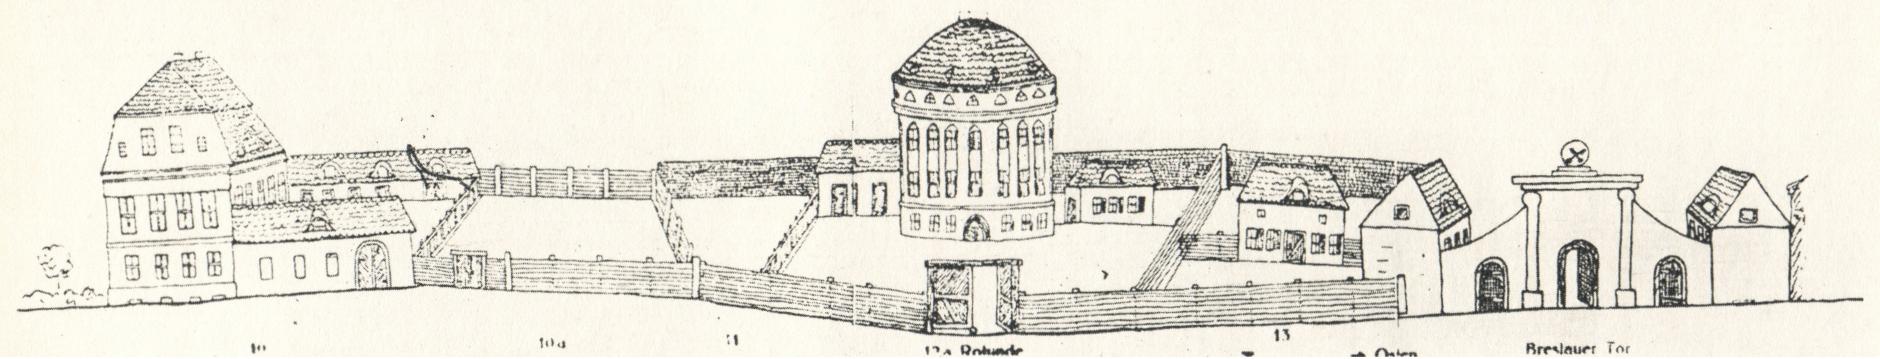 (1830-1840) Zabudowa ul. Podgórnej od południa. Widoczna baszta tzw. Armatnia i brama Wrocławska.